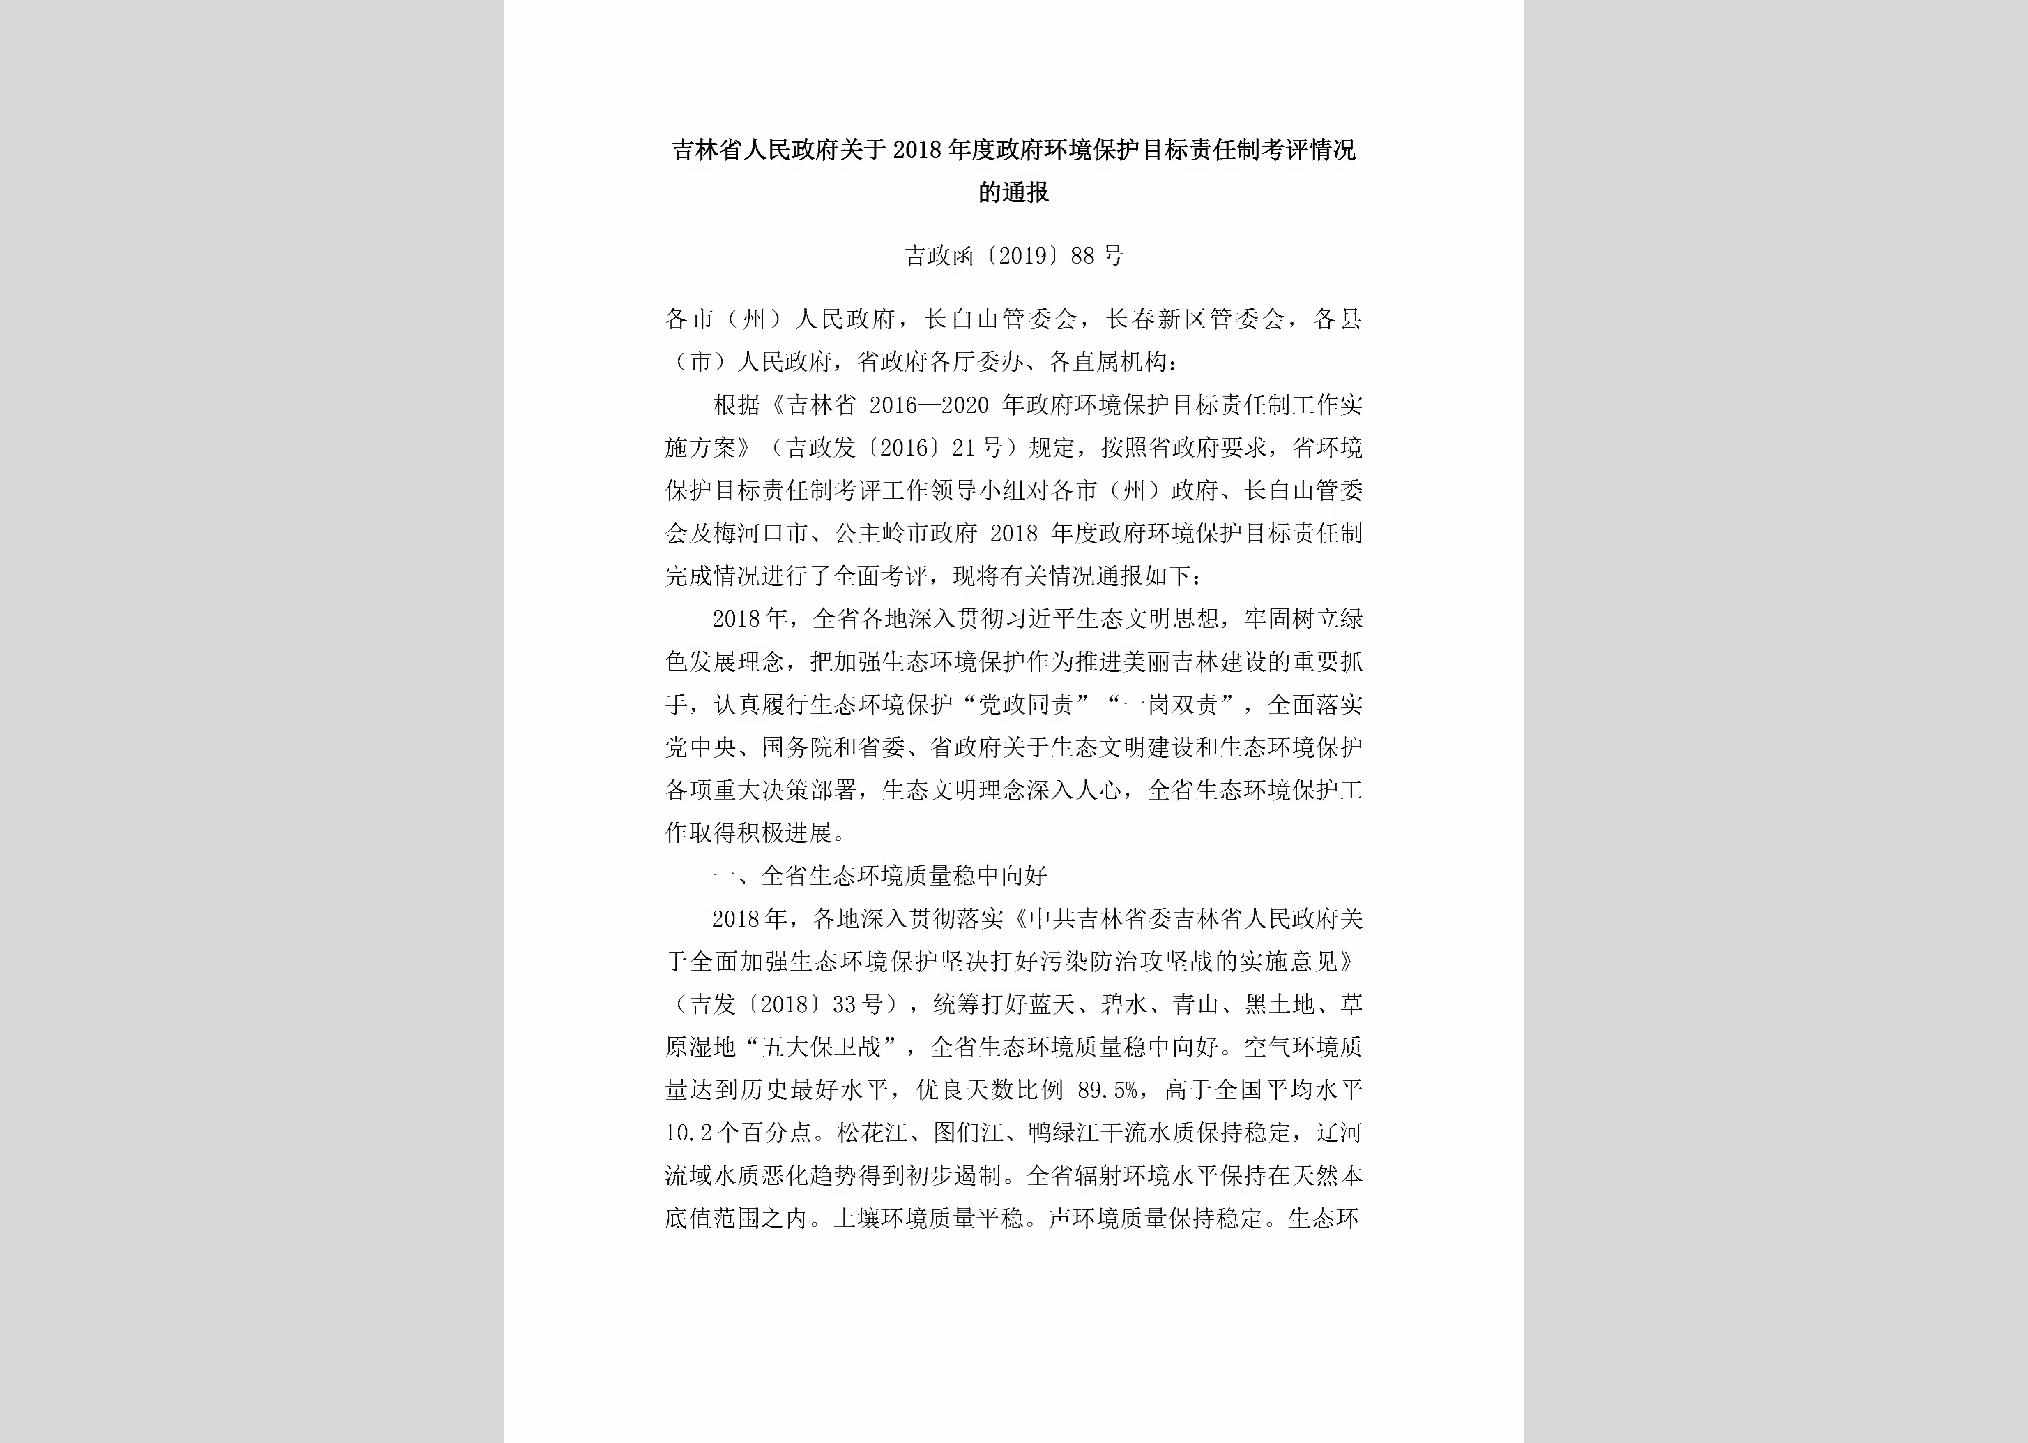 吉政函[2019]88号：吉林省人民政府关于2018年度政府环境保护目标责任制考评情况的通报